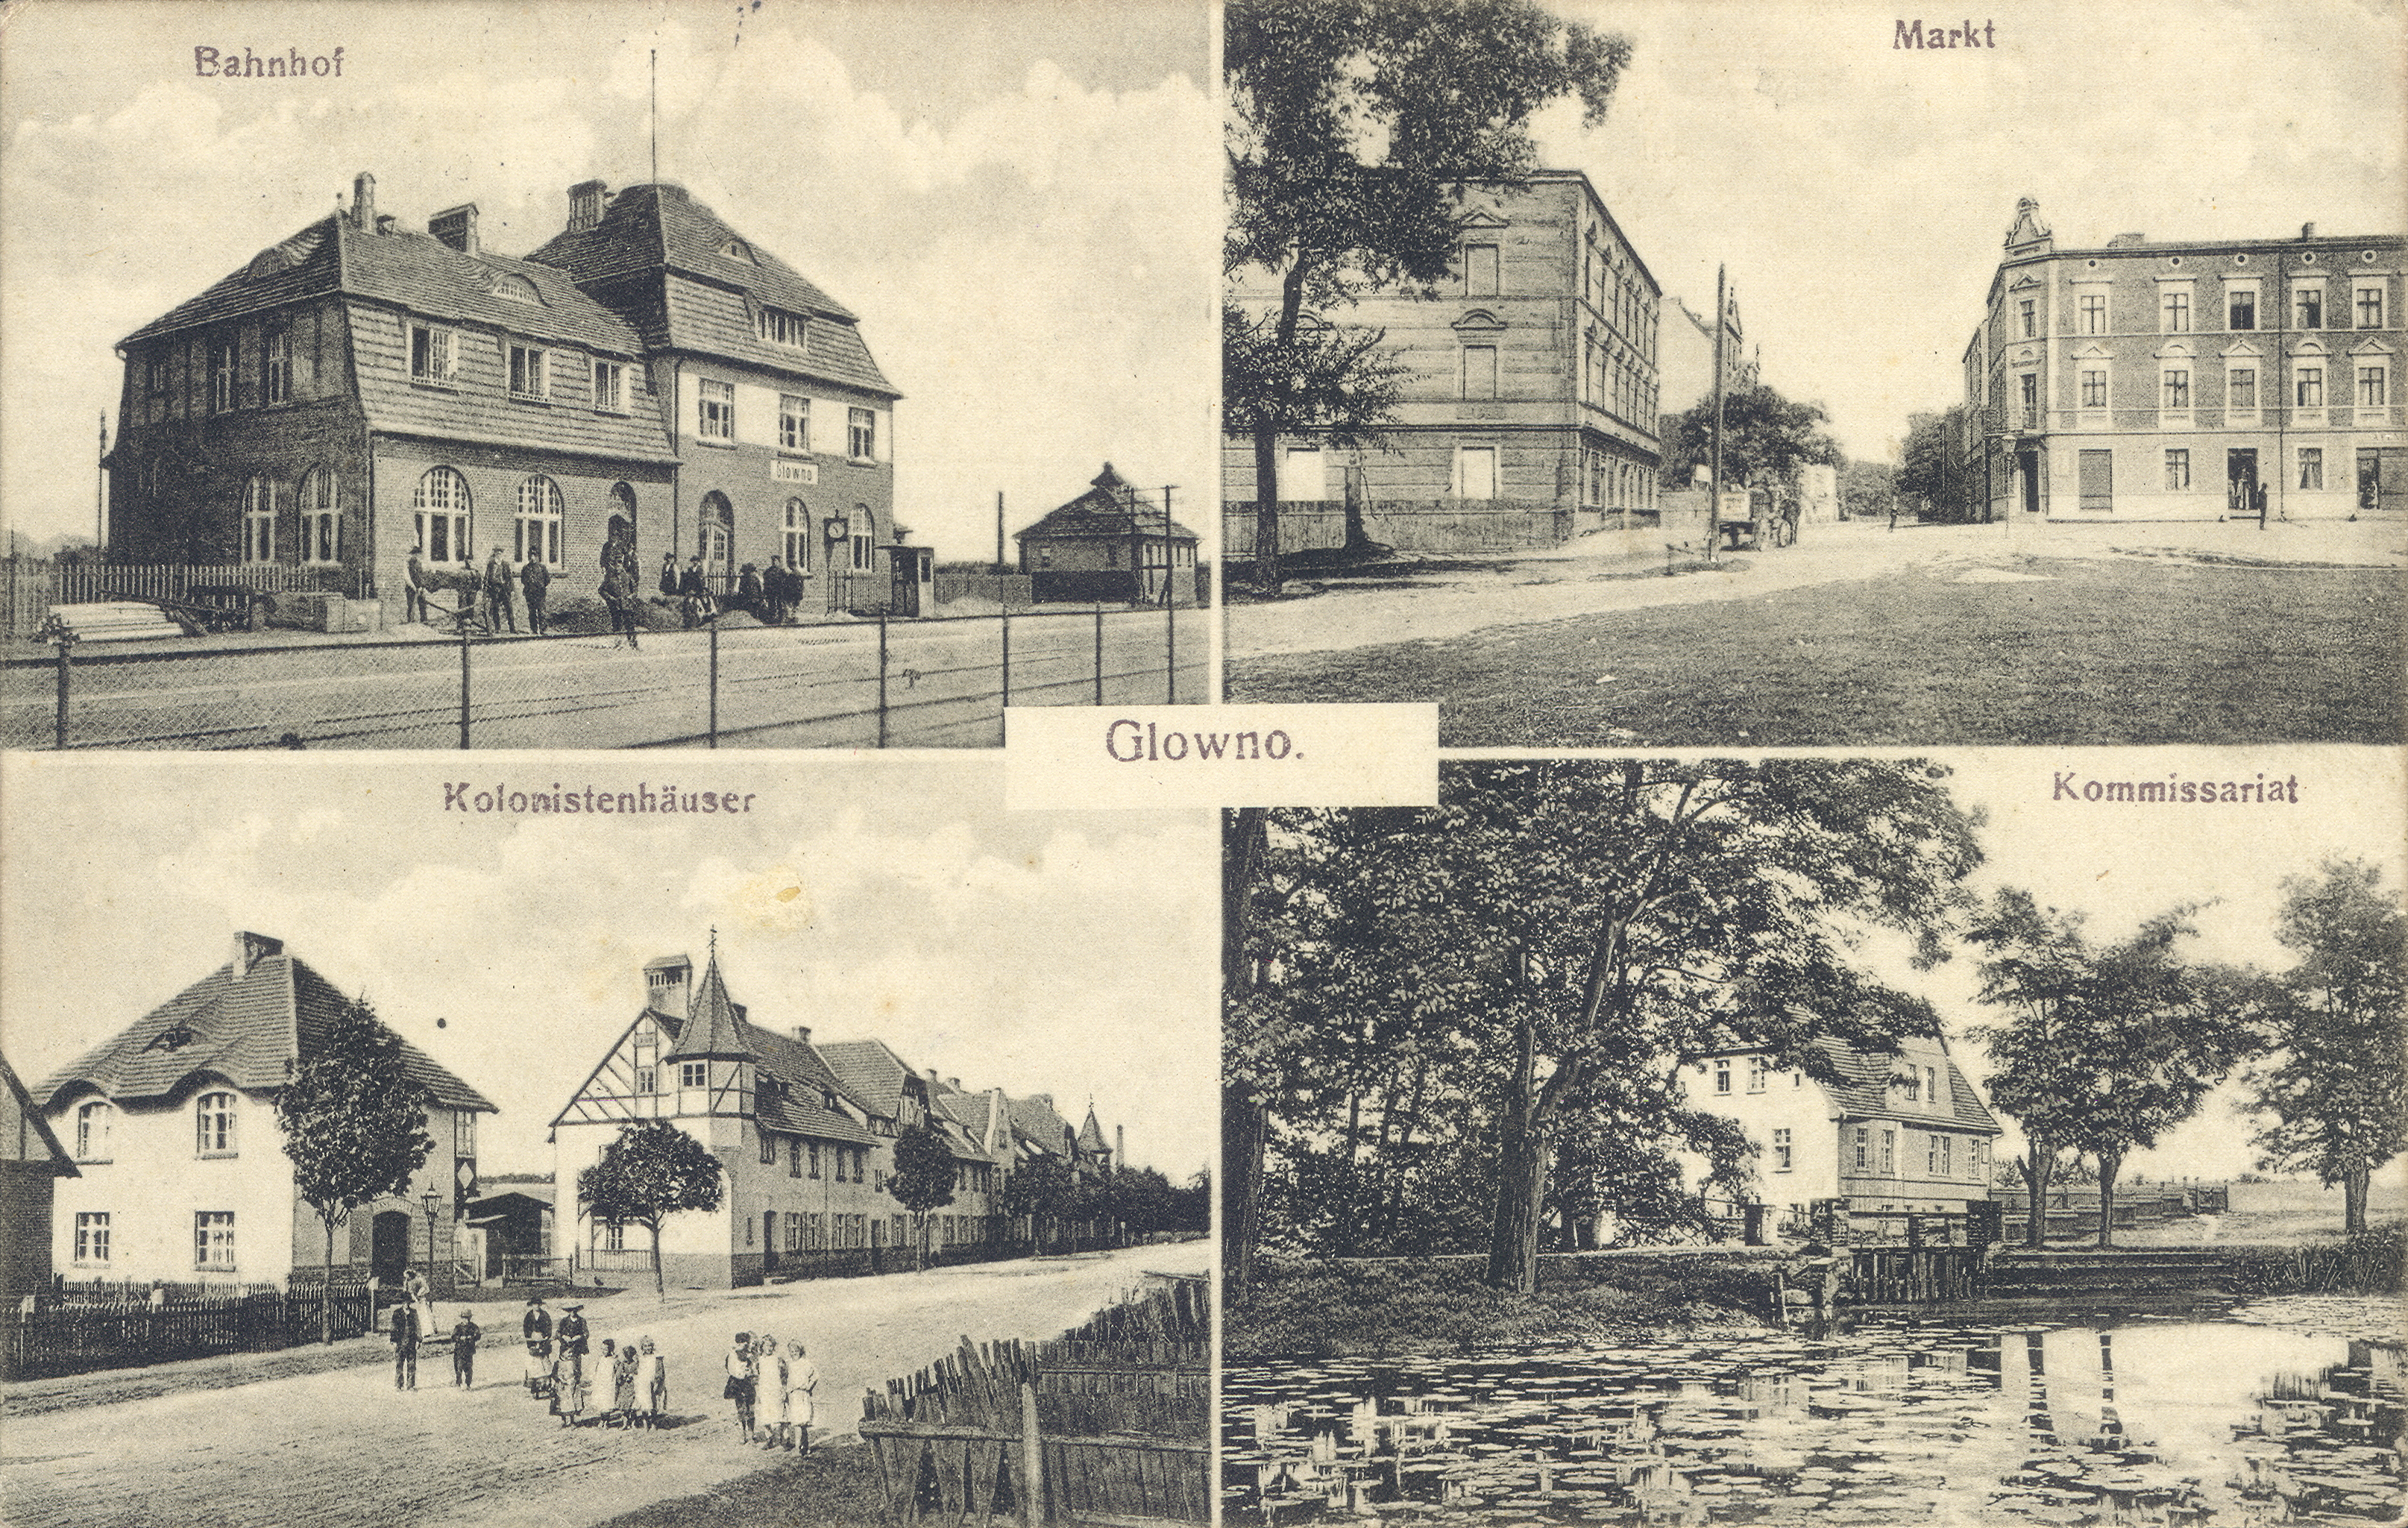 Glowno. Czteroobrazkowa karta pocztowa z widokami Głównej. [1] Bahnhof – dworzec kolejowy Glowno (dziś Poznań Wschód); [2] Markt – Rynek Wschodni, na drugim planie ulica Średnia, po lewej dom rodziny Pflaumów przy Mittelstrasse 1 (dziś: ul. Średnia); [3] Kolonistenhäuser – Kolonia Karlsbunne przy ul. Gnieźnieńskiej. Osiedle zostało wybudowane w 1906 roku z inicjatywy Deutsche Arbeiter-Wohnungsgenossenschaft (Niemiecka Robotnicza Spółdzielnia Mieszkaniowa), pomiędzy Pudewitzerstrasse (ul. Pobiedziską, dziś Gnieźnieńską), a rzeką Główną. Składało się z domów typu willowego dla majstrów i urzędników miejskich oraz podłużnego budynku wielorodzinnego wzdłuż ul. Gnieźnieńskiej, przeznaczonego dla robotników. W 1919 roku osiedle zostało zakupione przez Zakłady Cegielskiego; [4] Komissariat – tzw. 